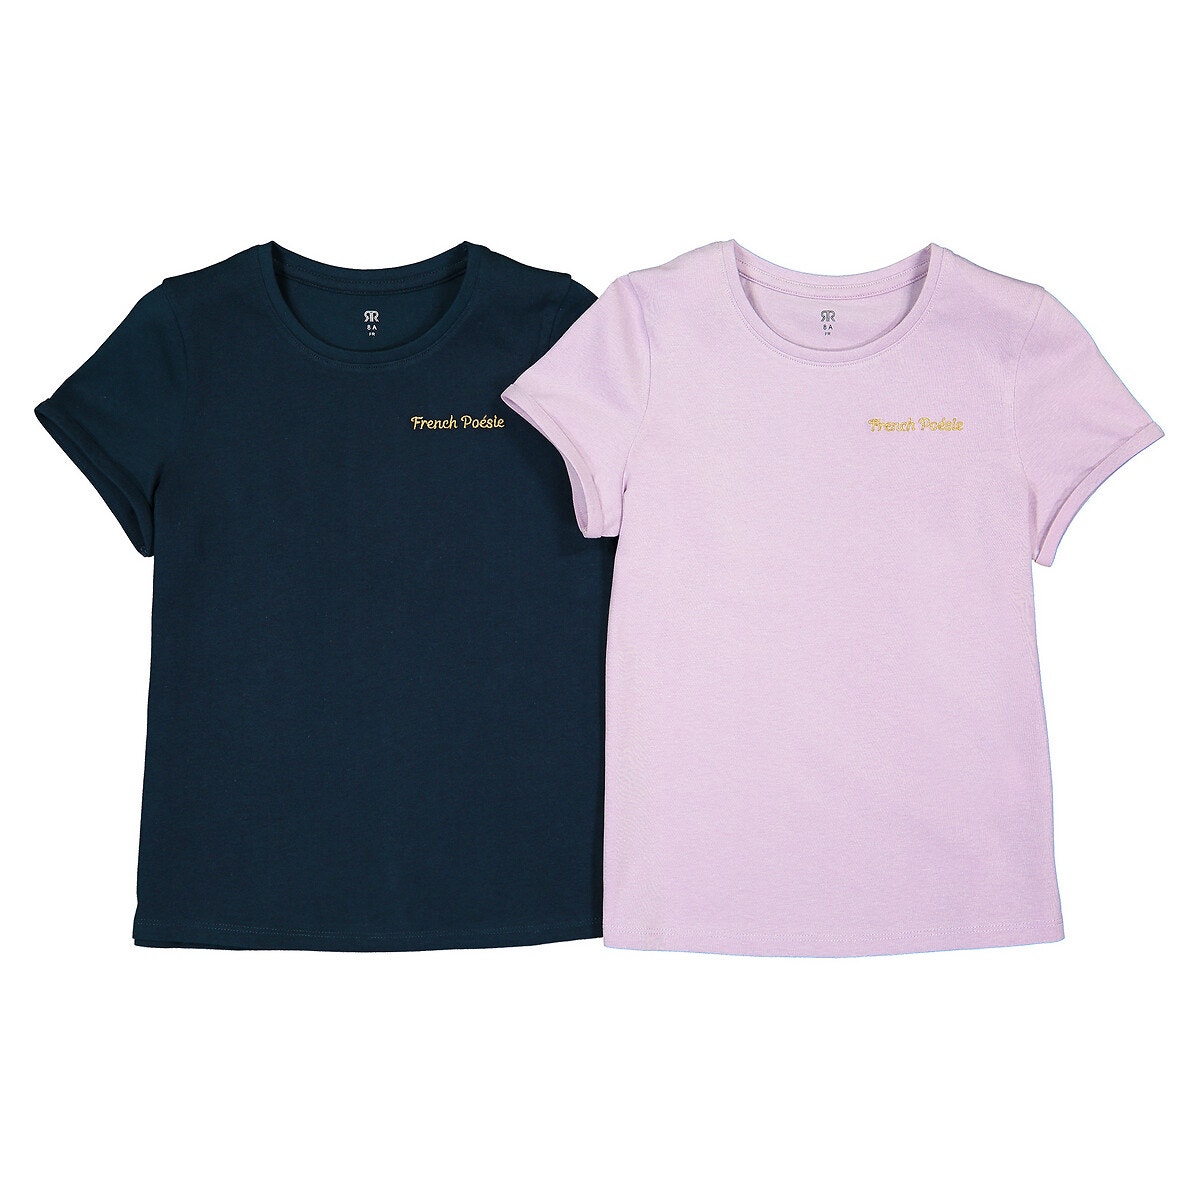 ΠΑΙΔΙ | Μπλούζες & Πουκάμισα | Τοπ Σετ 2 T-shirt από οργανικό βαμβάκι, 3-12 ετών